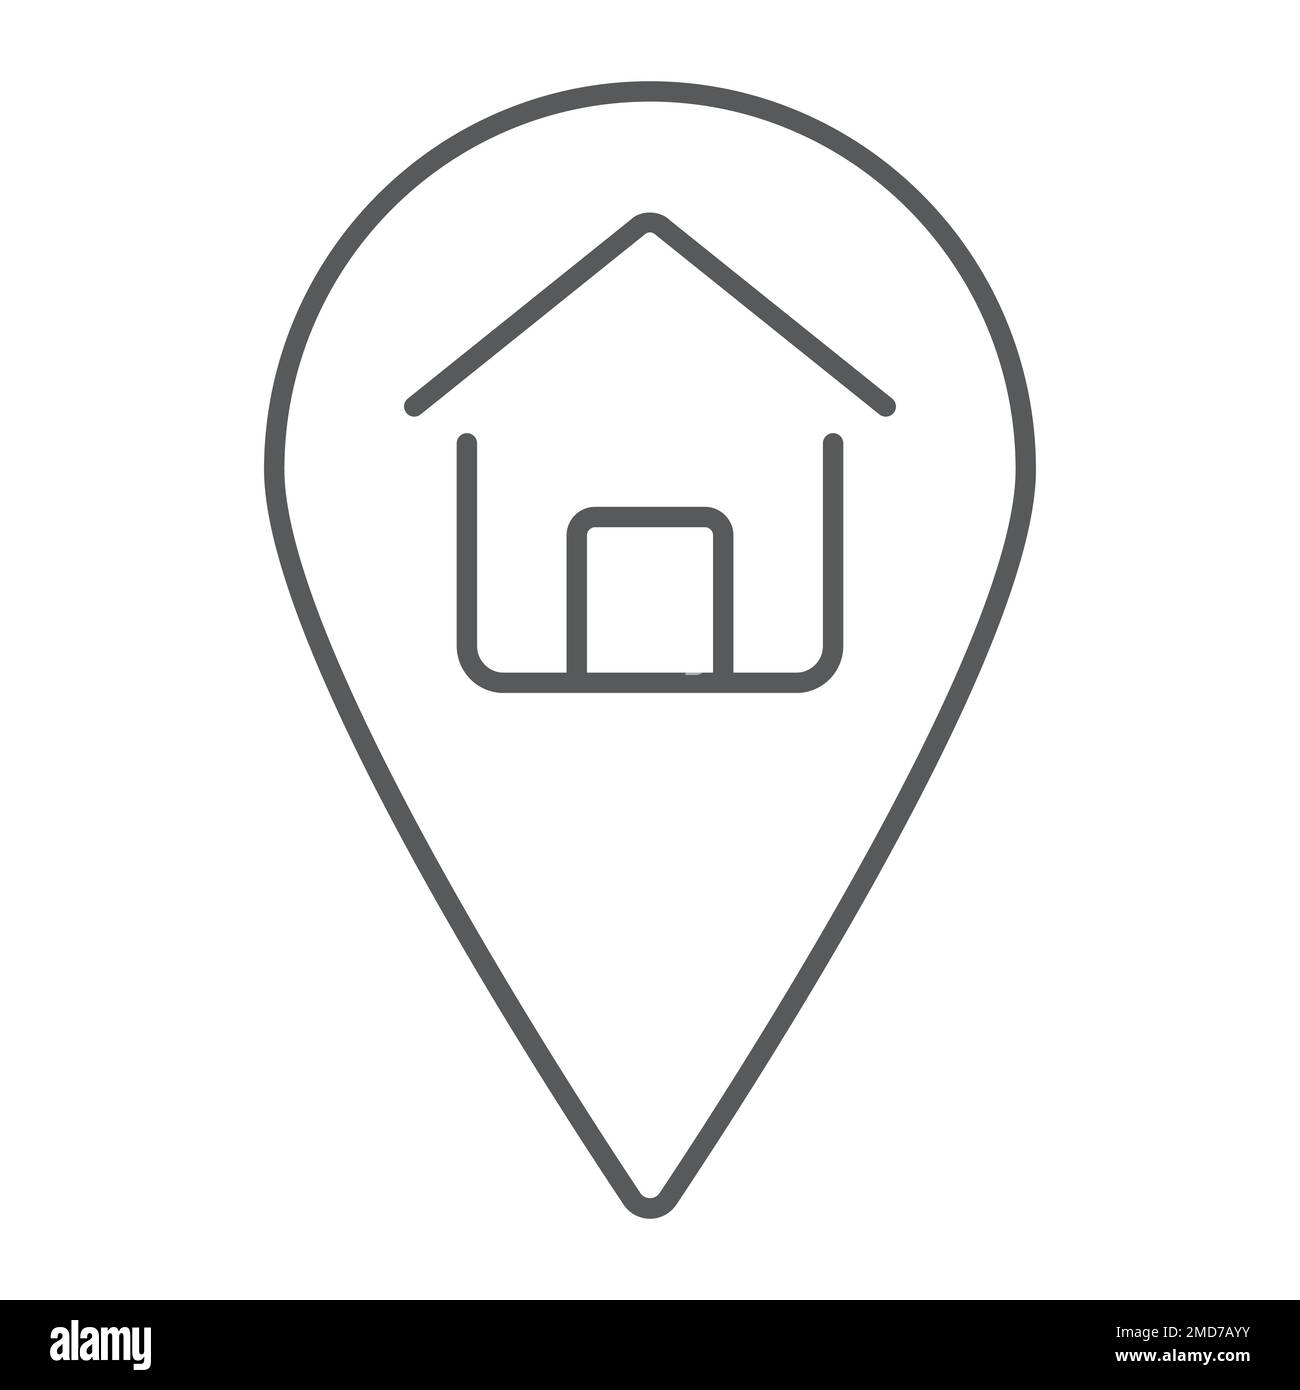 Home posizione icona linea sottile, immobiliare e casa, puntino segno grafica vettoriale, un motivo lineare su uno sfondo bianco, eps 10. Illustrazione Vettoriale